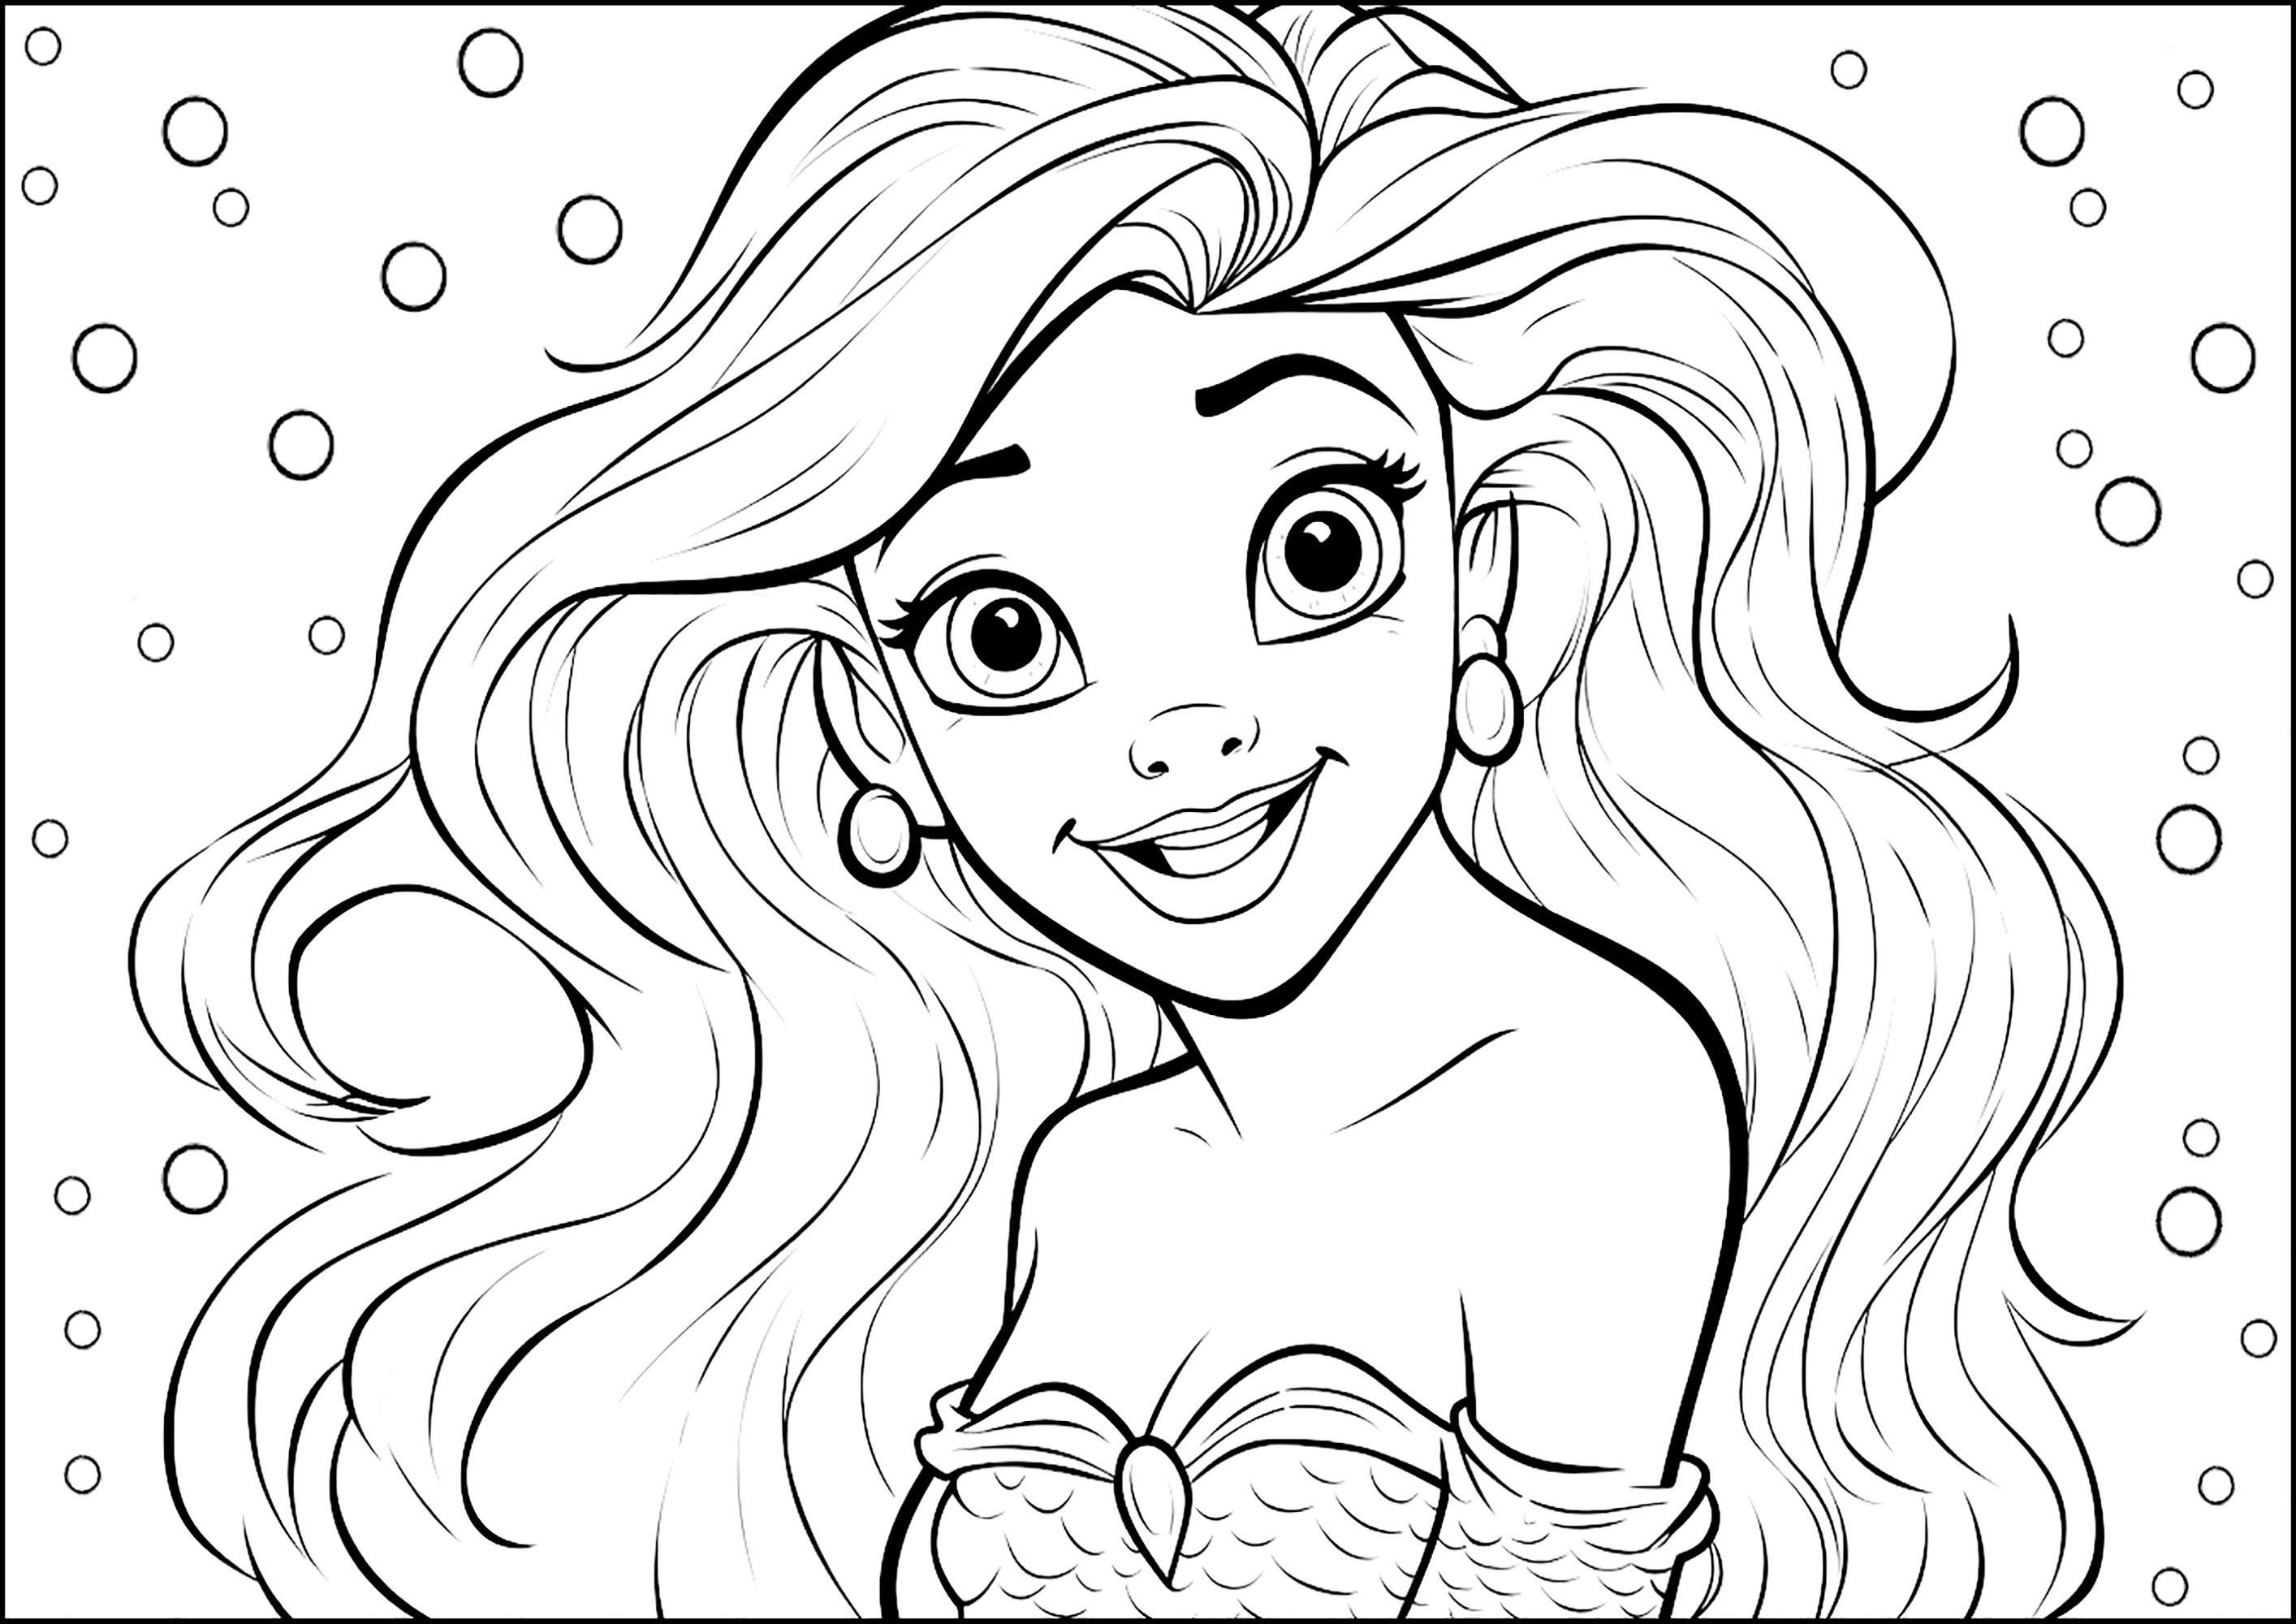 Uma jovem e bonita sereia rodeada de bolhas de ar. Um design inspirado no estilo Disney / Pixar